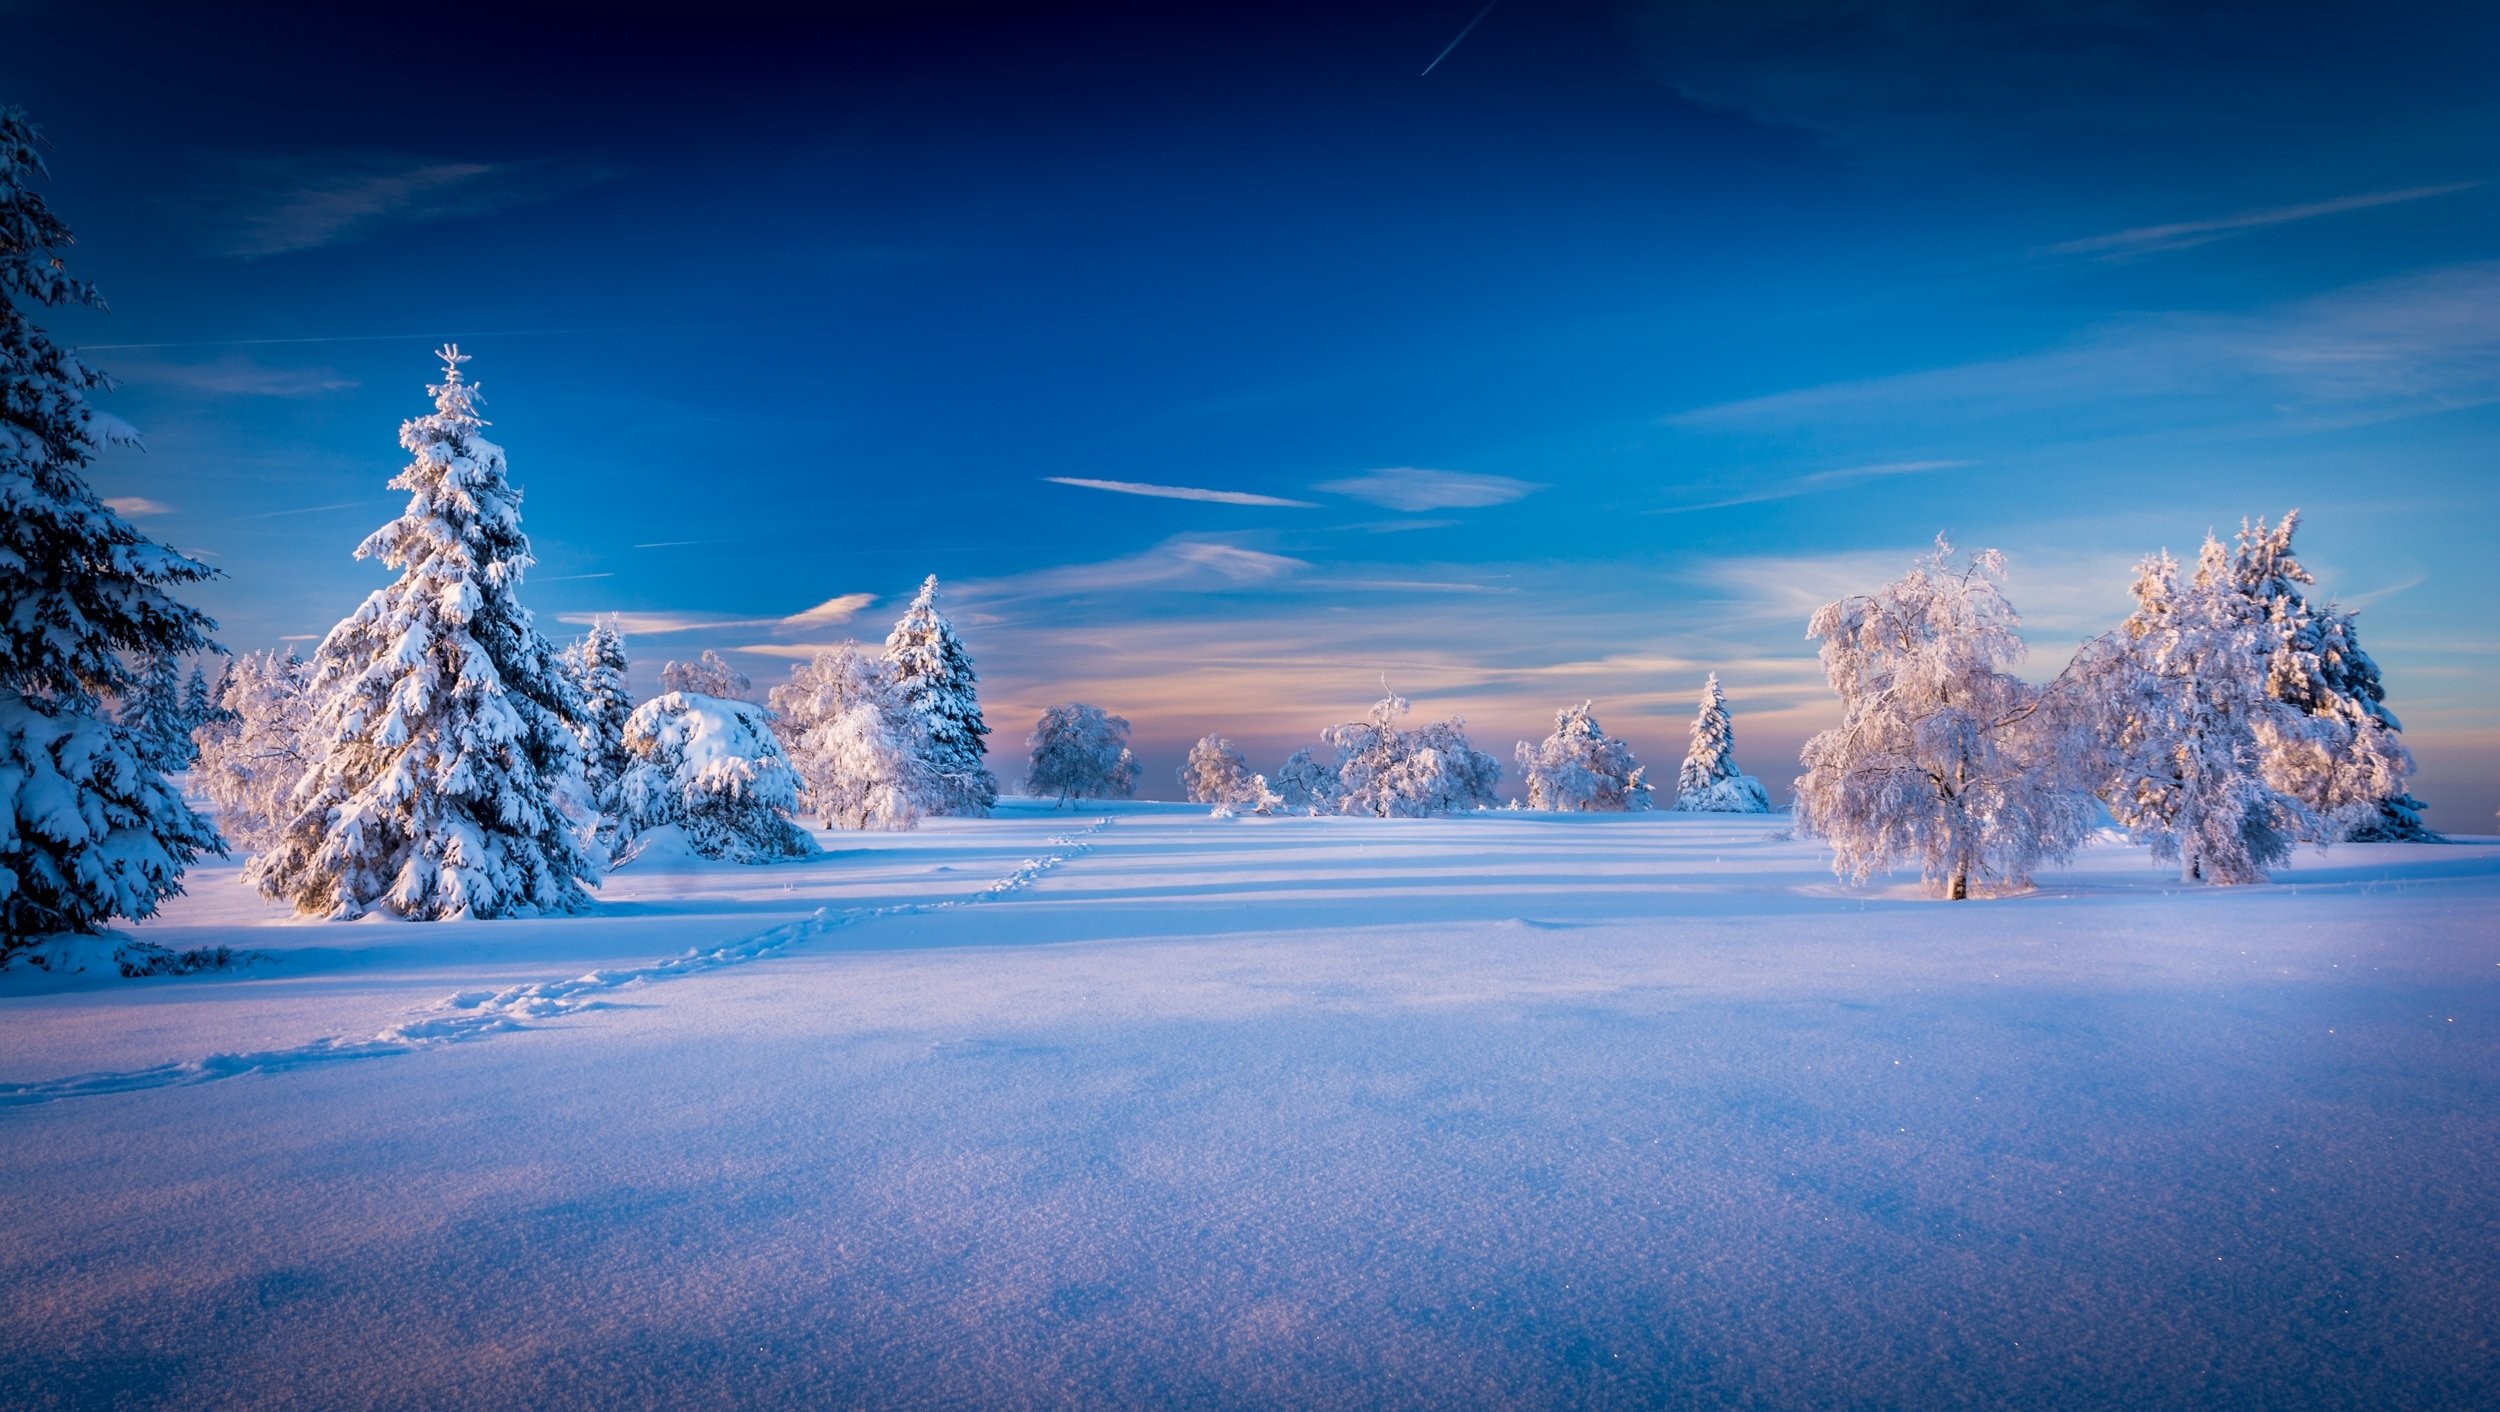 배경 화면 3d,하늘,겨울,눈,자연,자연 경관